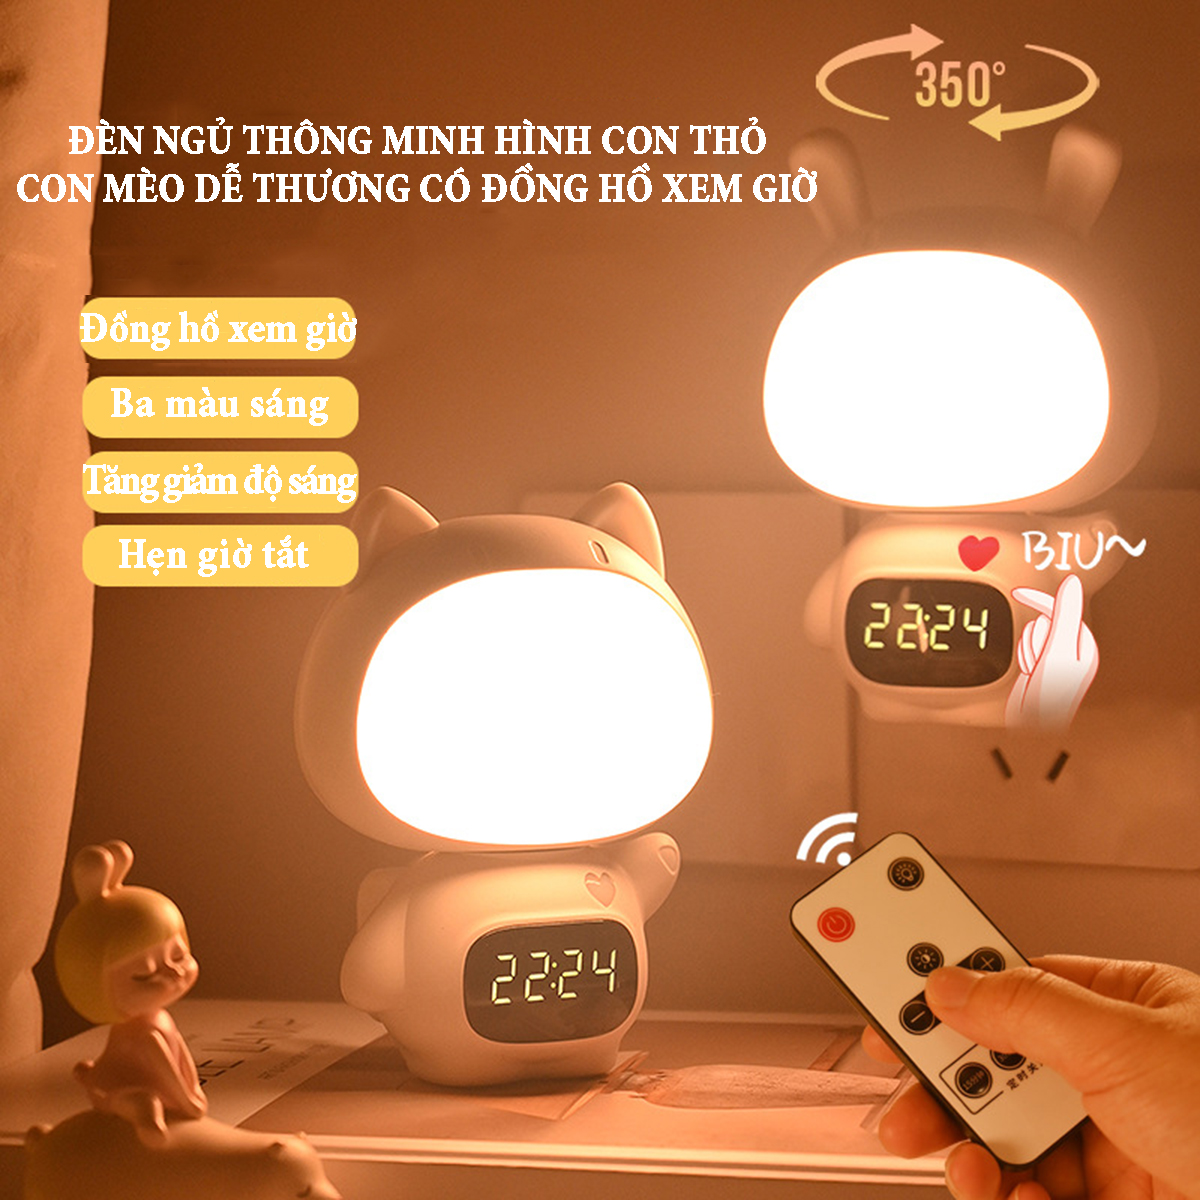 Đèn ngủ thông minh hình con thỏ dễ thương có đồng hồ xem giờ ánh sáng 3 màu, tăng giảm điều chỉnh độ sáng pin sạc 300mA